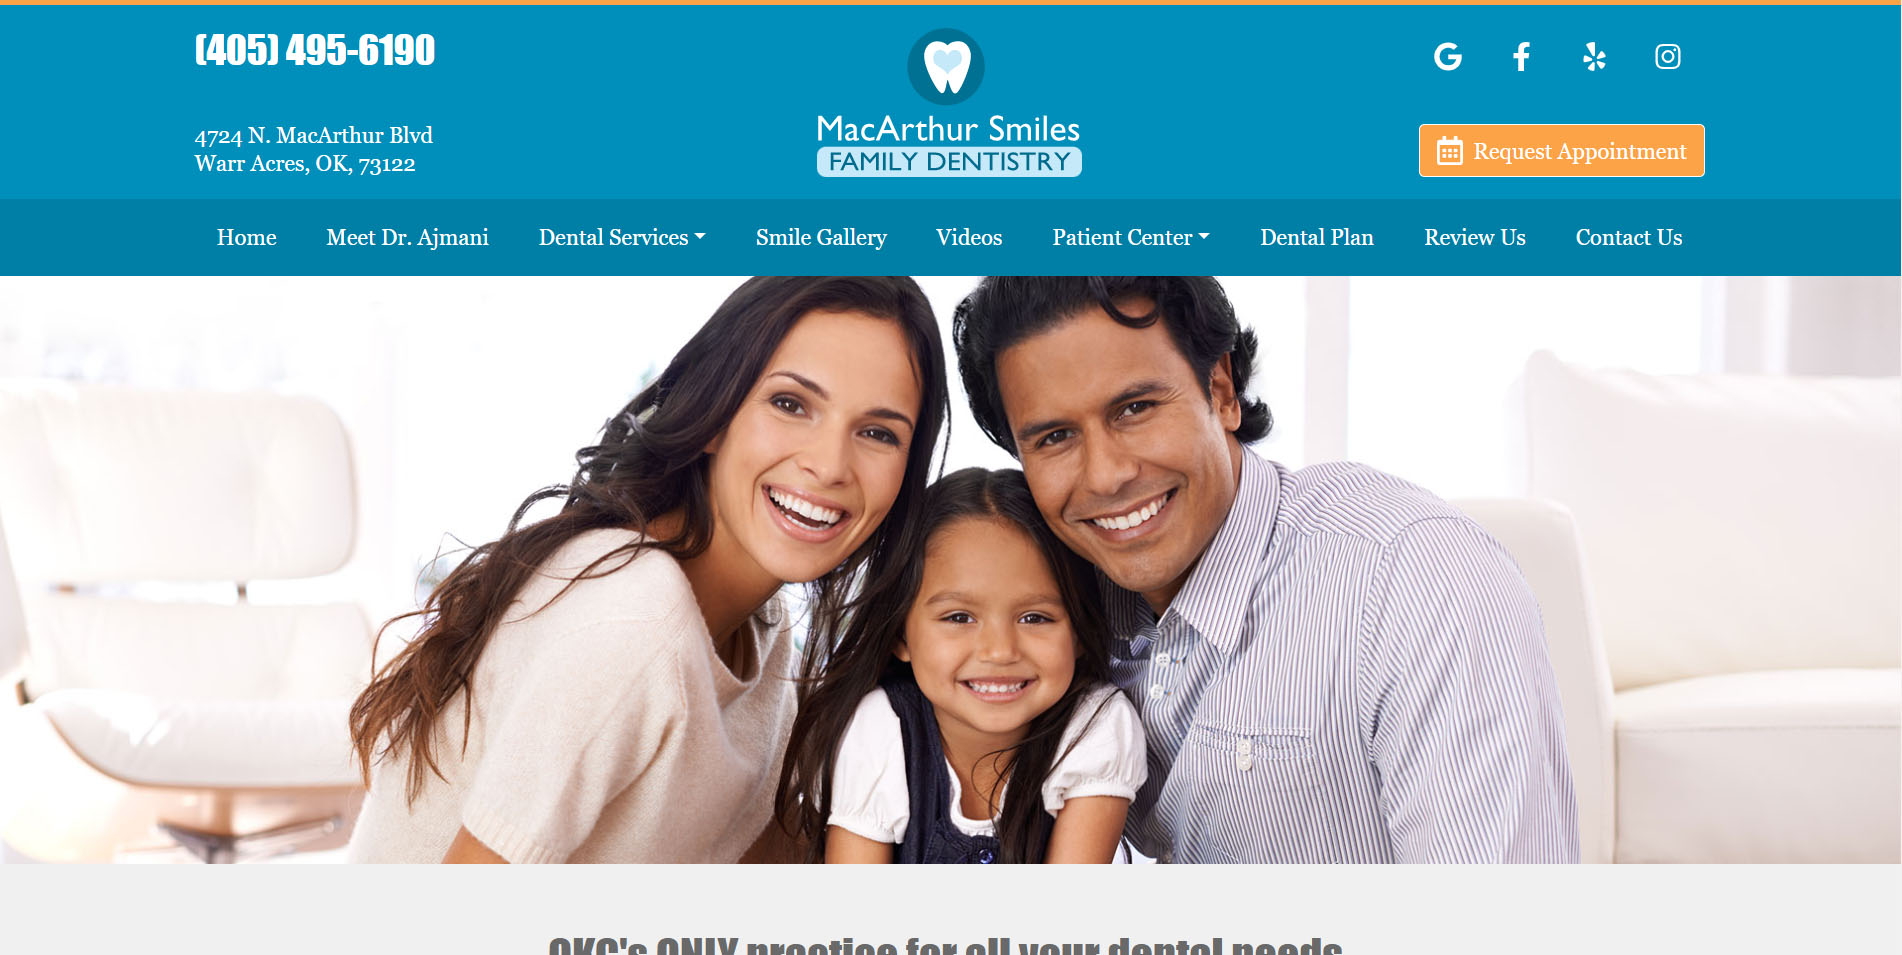 Dental Website Design #3 by Dental Web Services